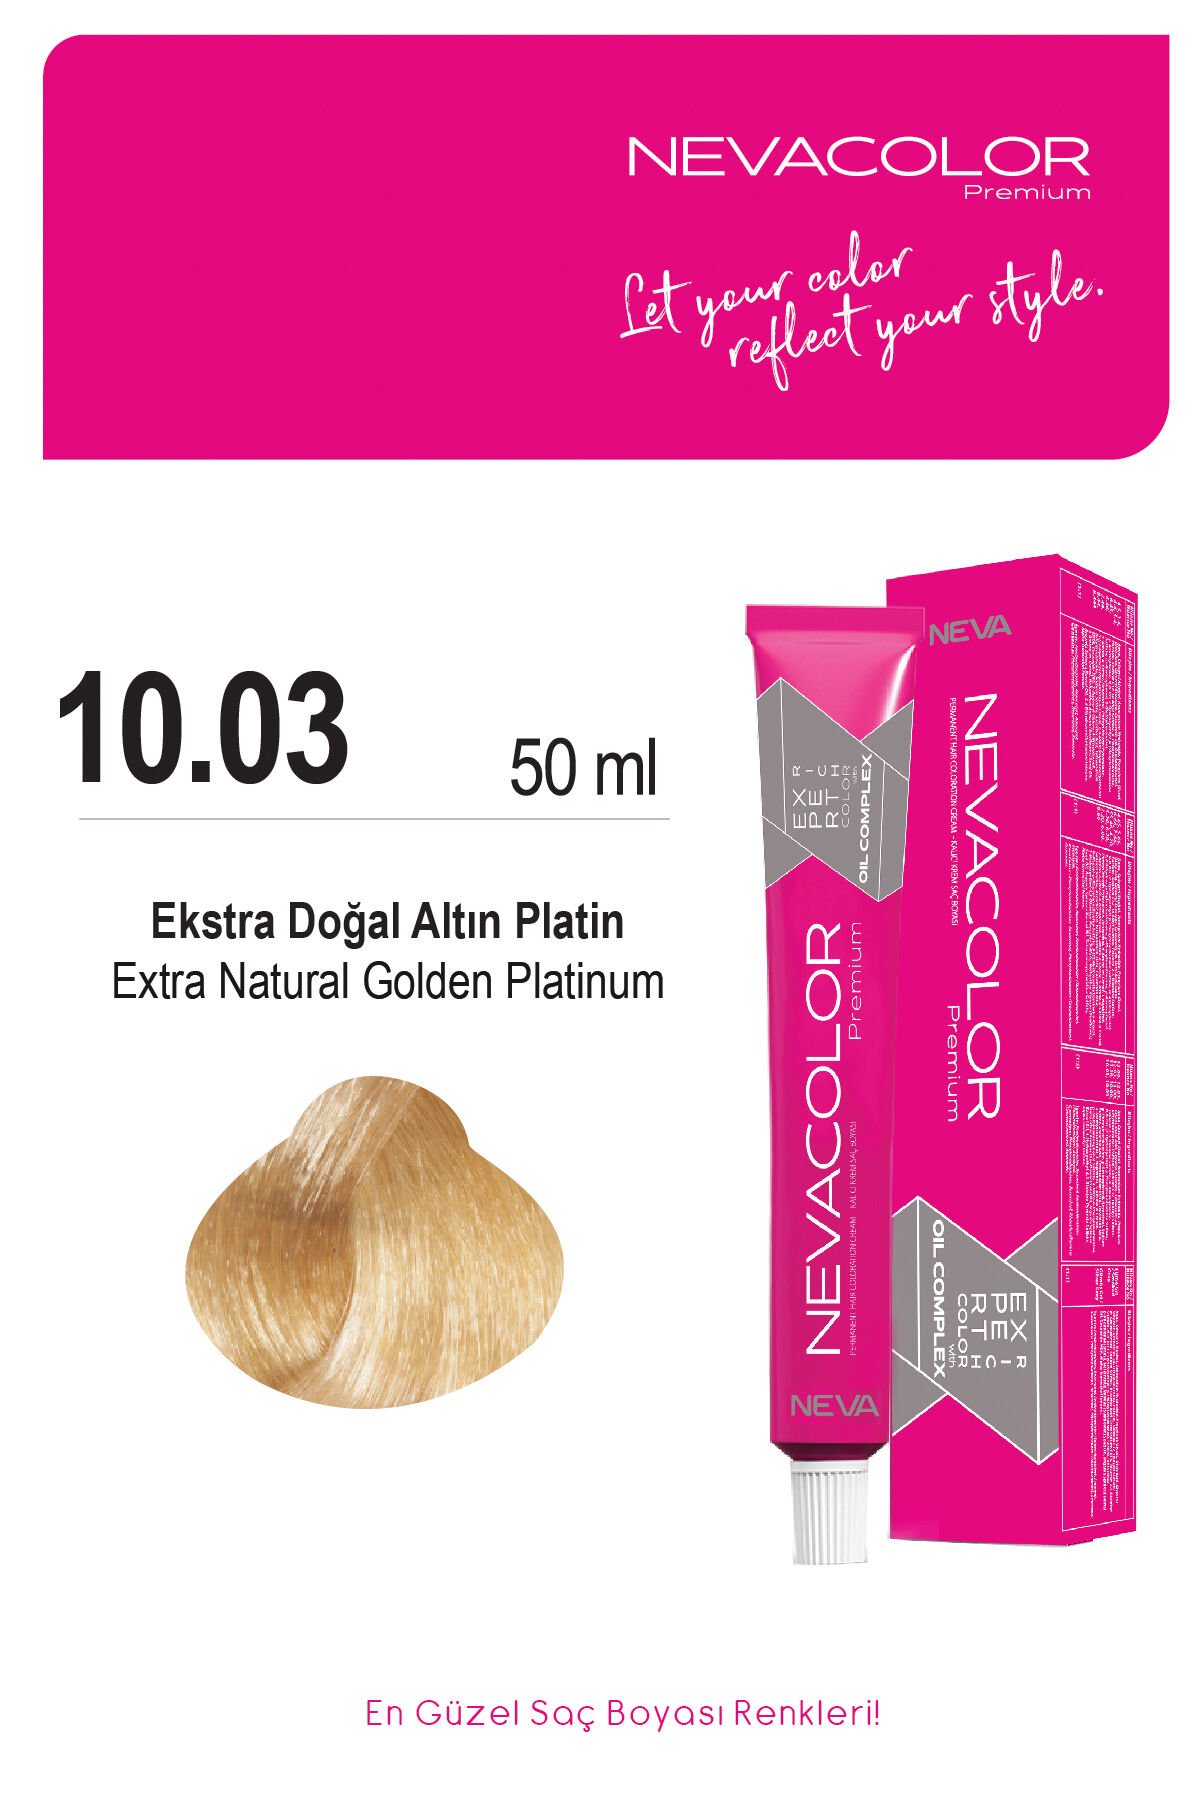 Nevacolor Premium 10.03 Ekstra Doğal Altın Platin - Kalıcı Krem Saç Boyası 50 g Tüp